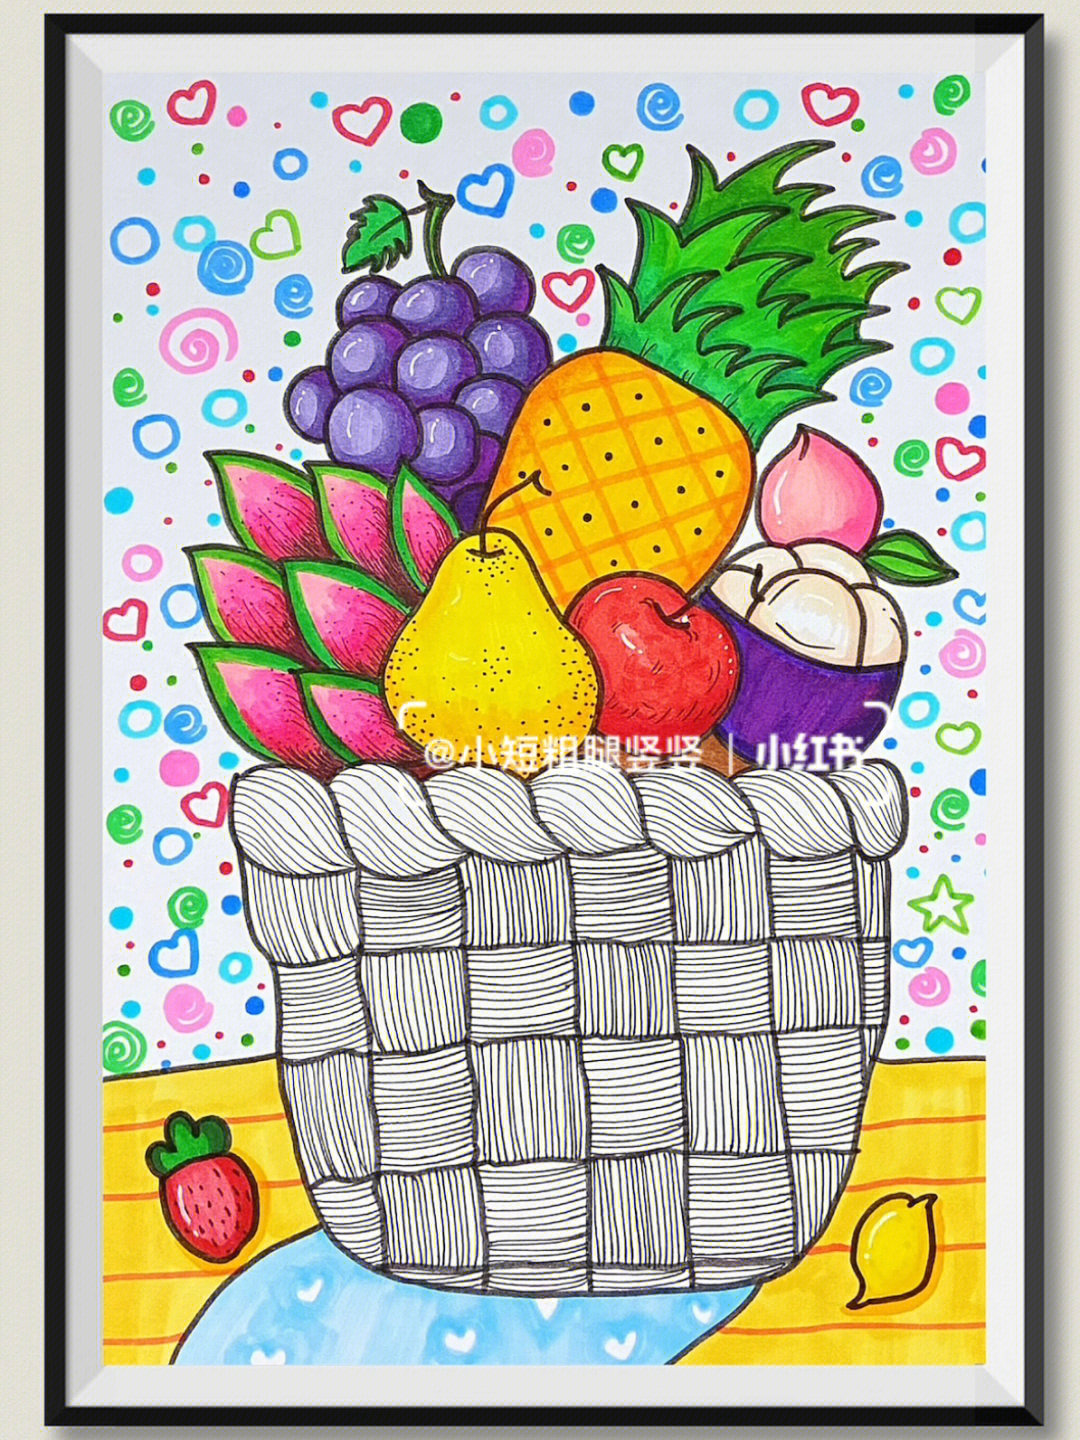 今日主题:《水果篮子91》马克笔: touchmark 168色画纸:a5荷兰白卡